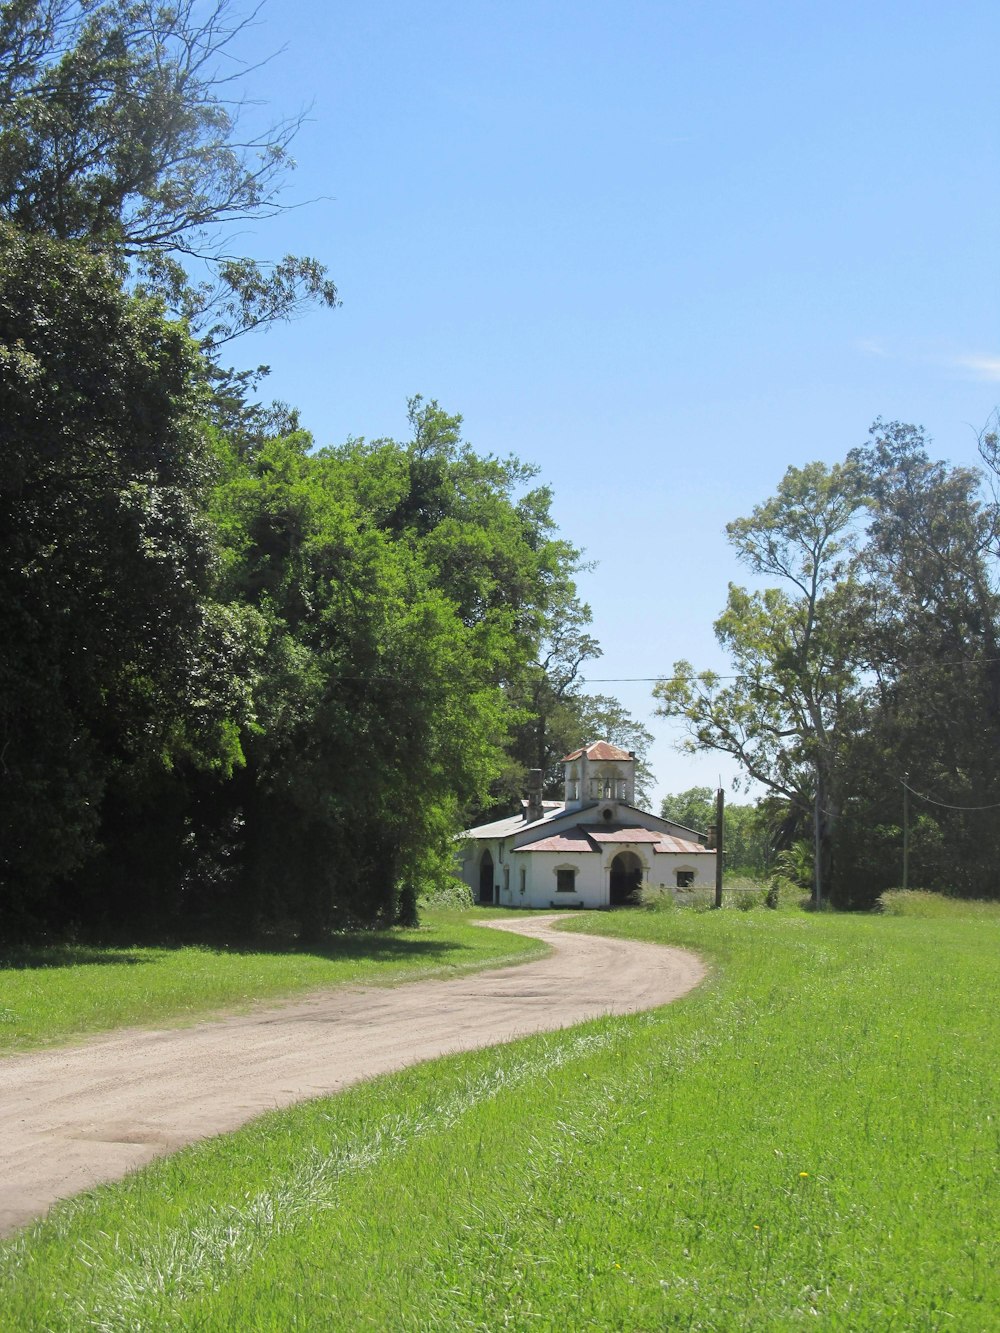 Casa de hormigón blanco cerca de campo de hierba verde